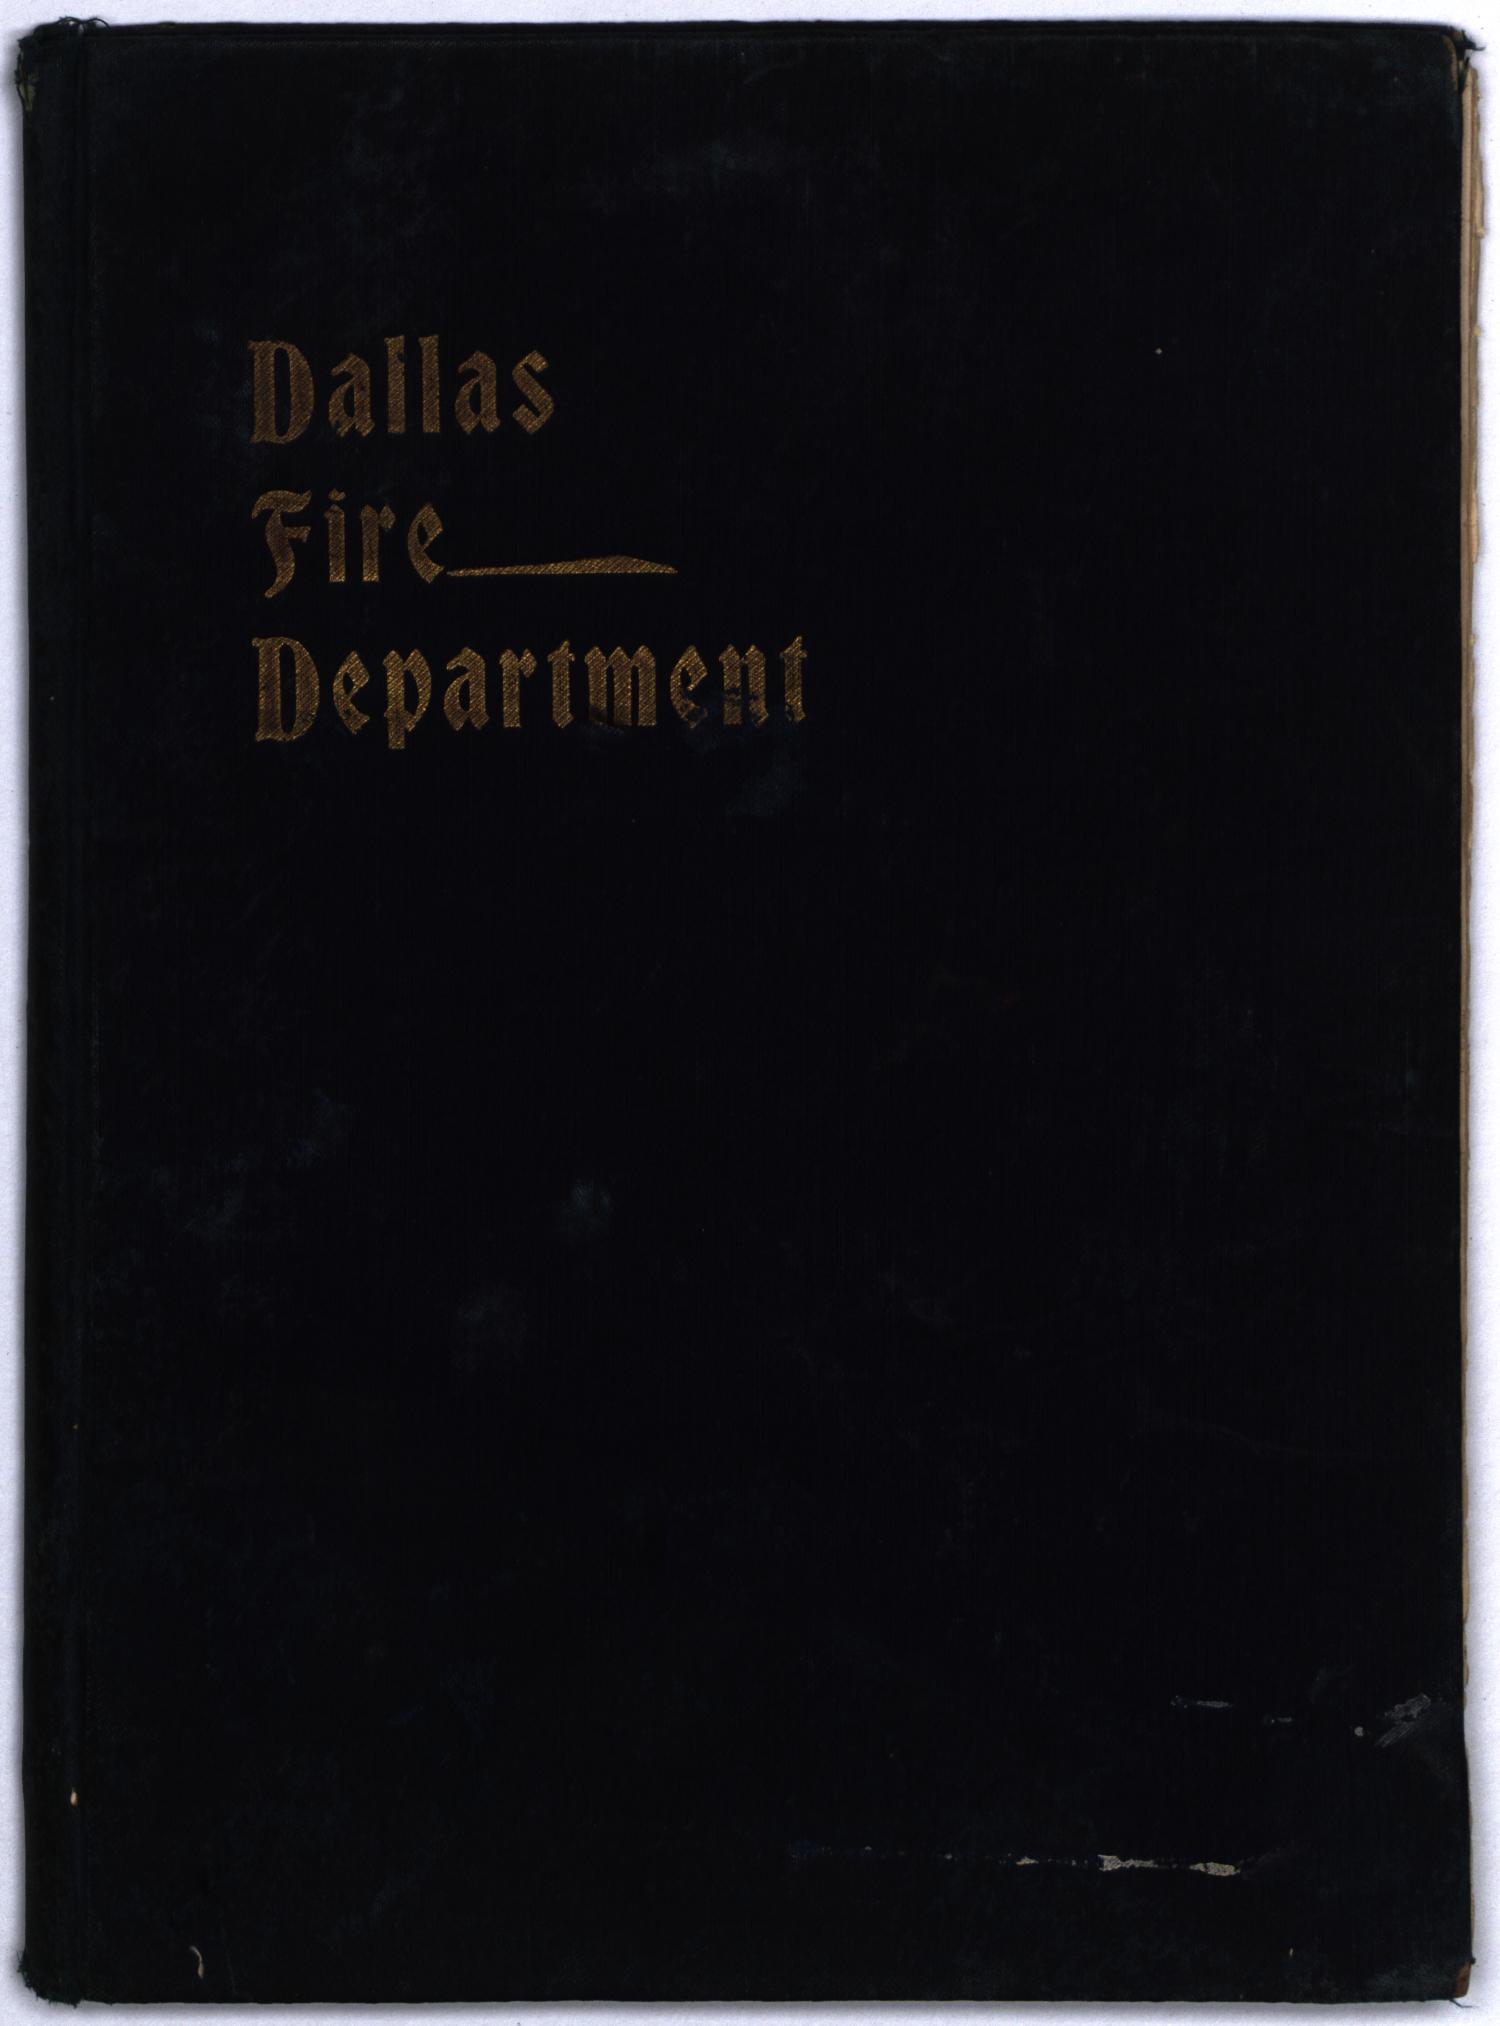 [Dallas Fire Department Annual, 1901]
                                                
                                                    1
                                                